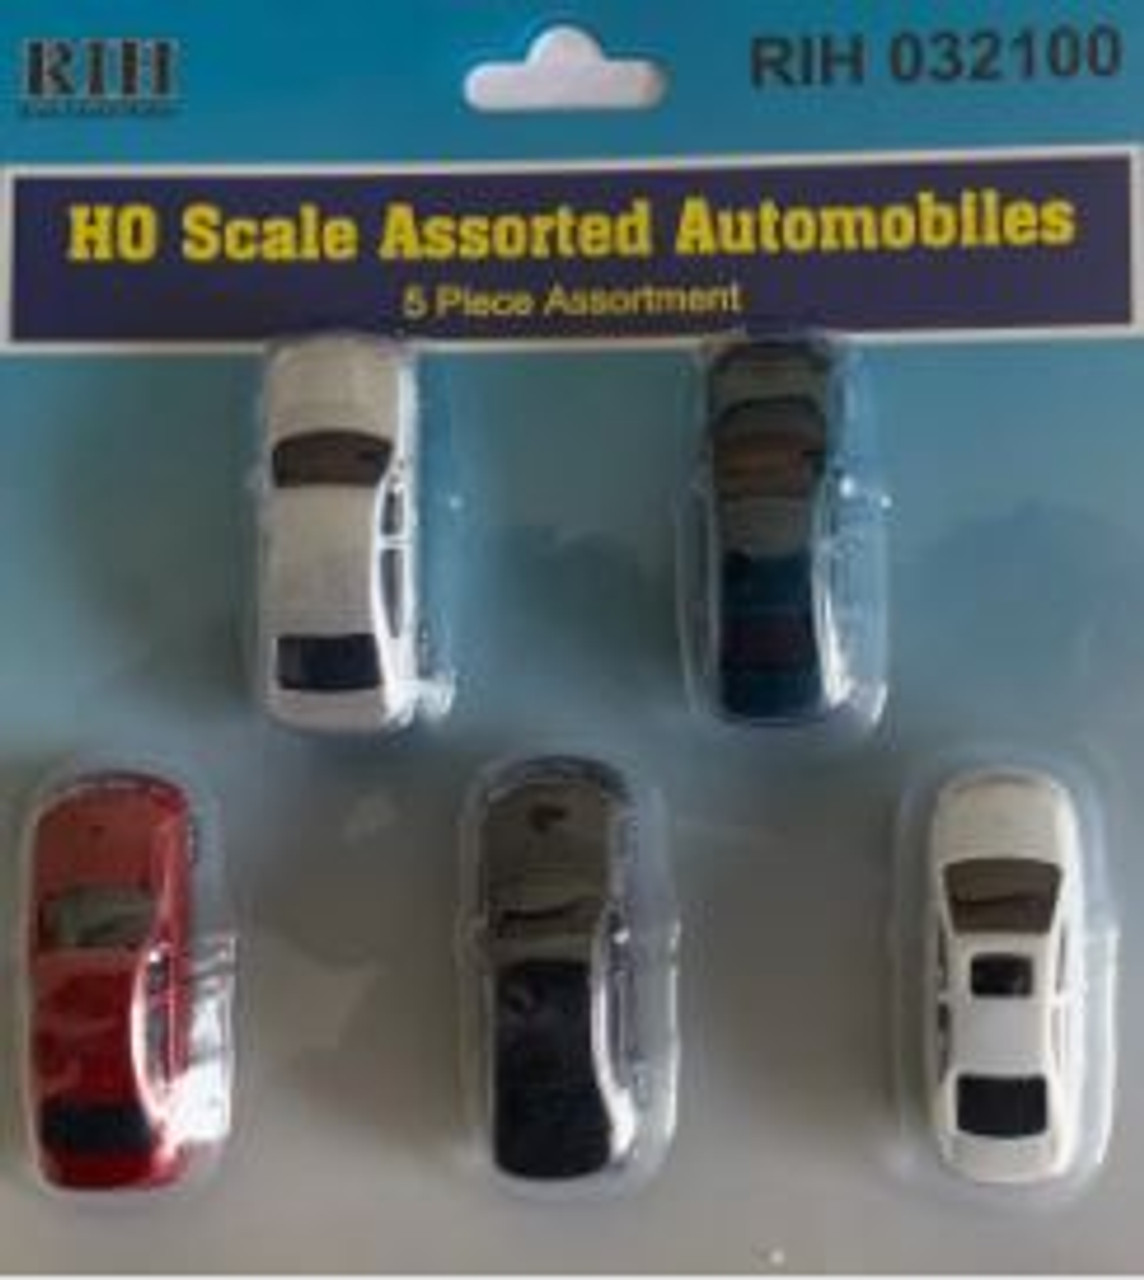 Rock Island Hobby 032100 - HO Scale Assorted Automobiles - HO Scale